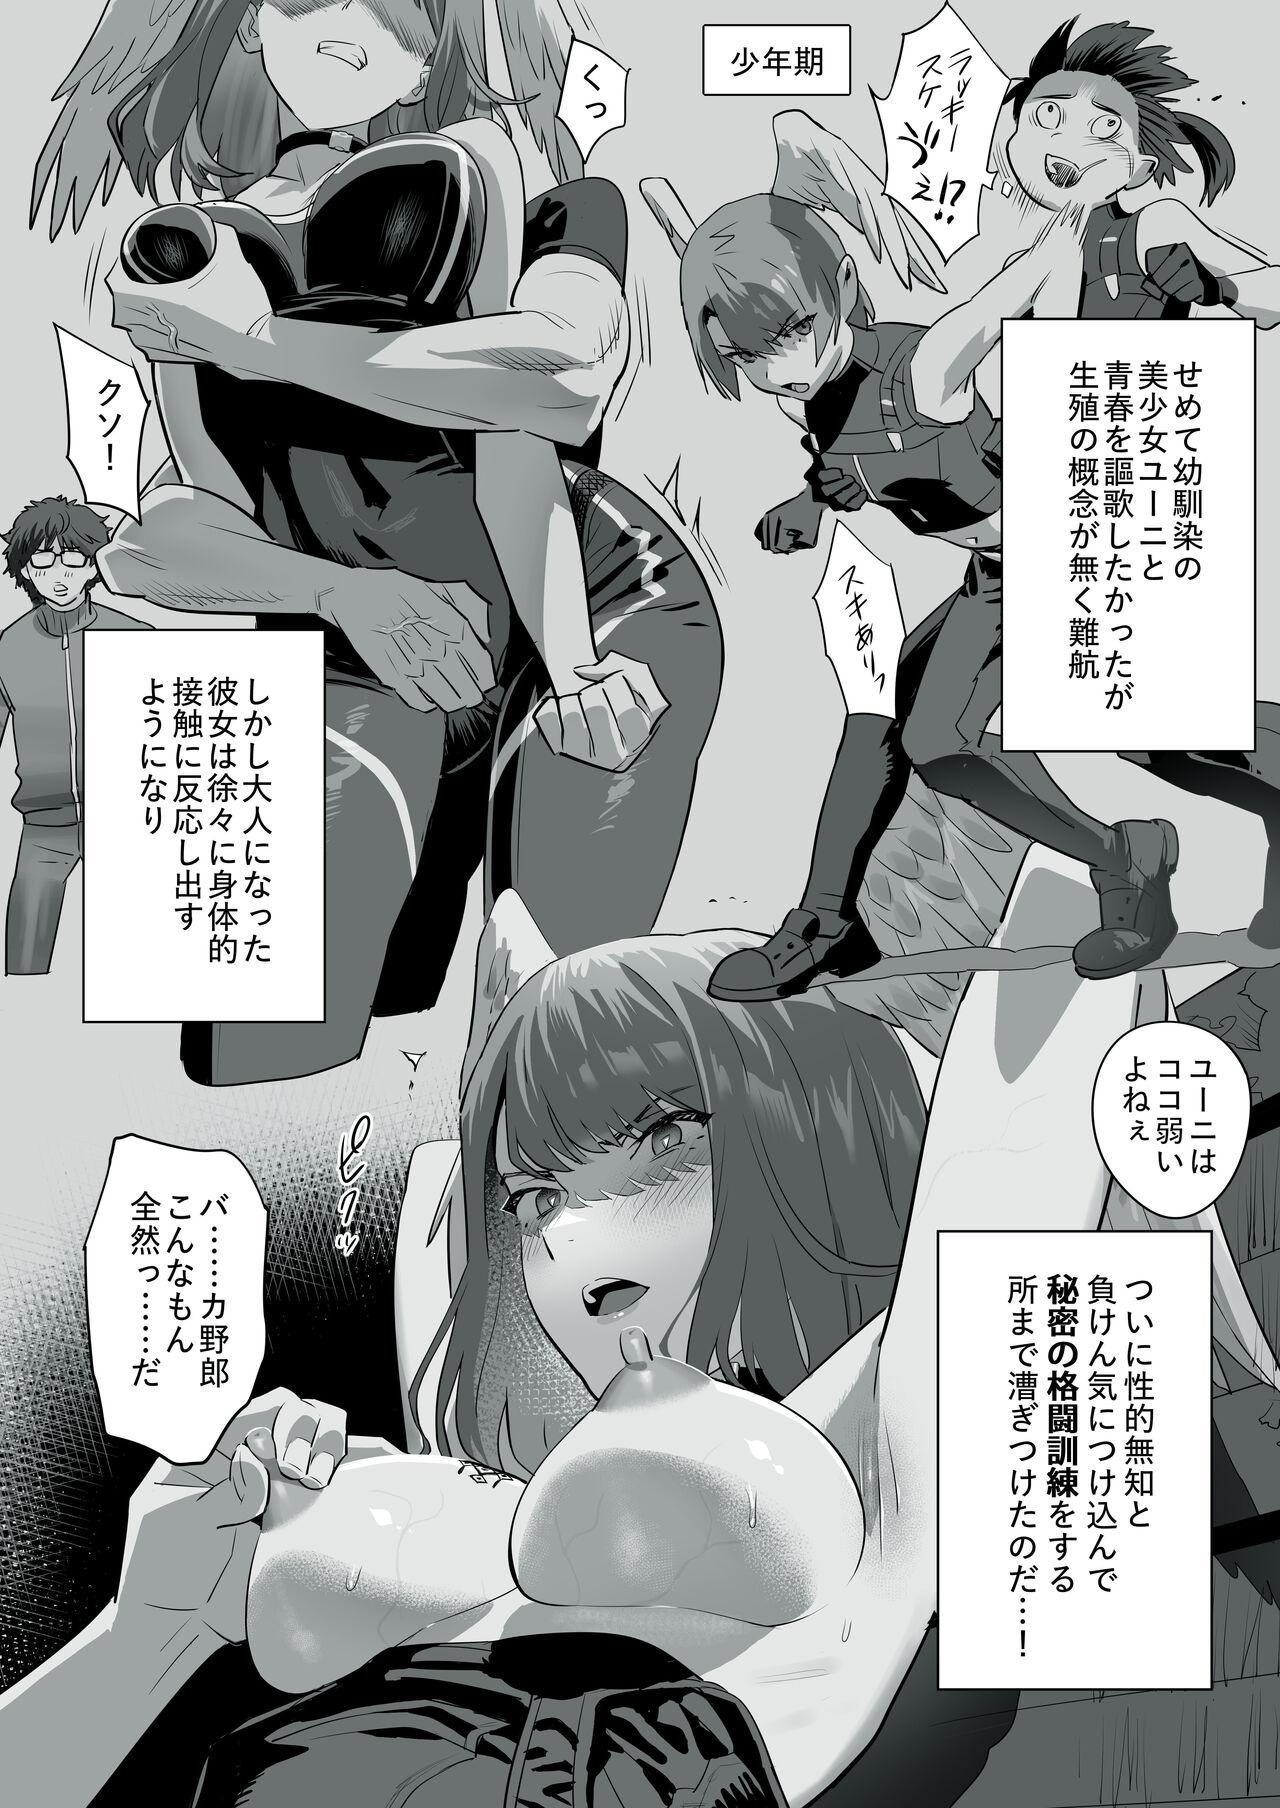 Jerk Off Tensei-saki ga Xenoblade 3 Manga - Xenoblade Xenoblade chronicles 3 Swingers - Picture 2